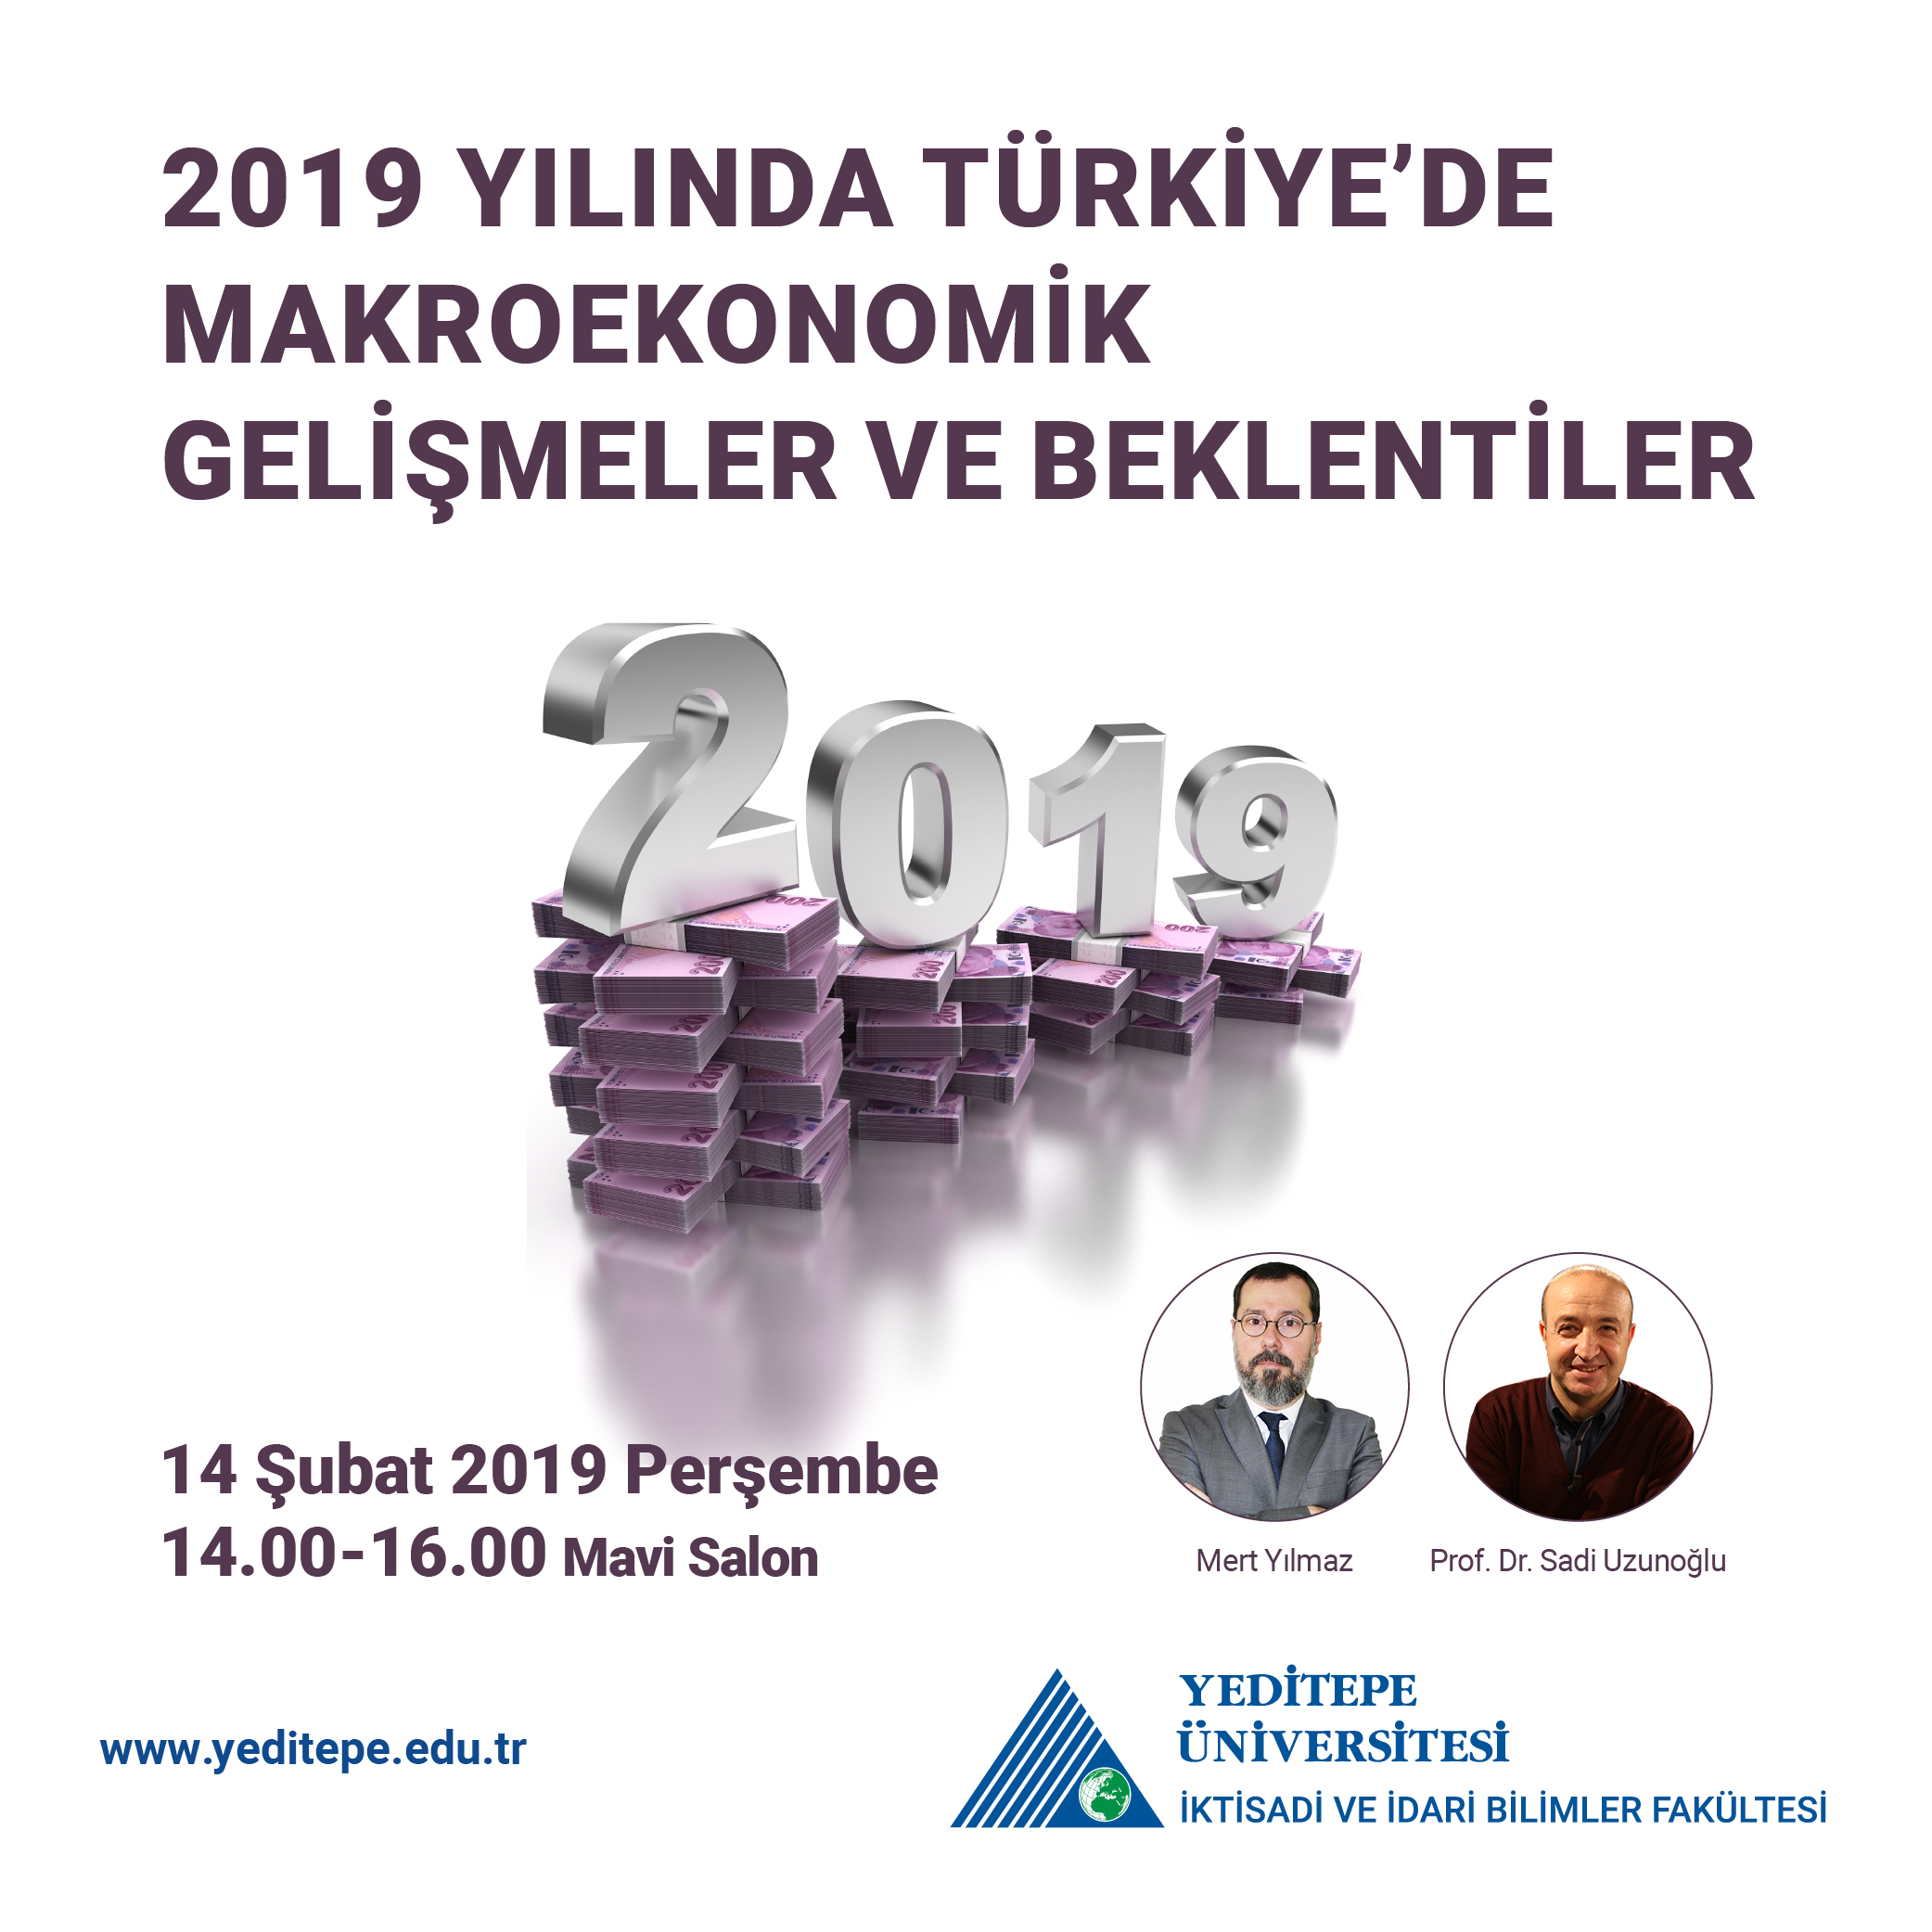 2019 Yılında Türkiye'de Makroekonomik Gelişmeler ve Beklentiler